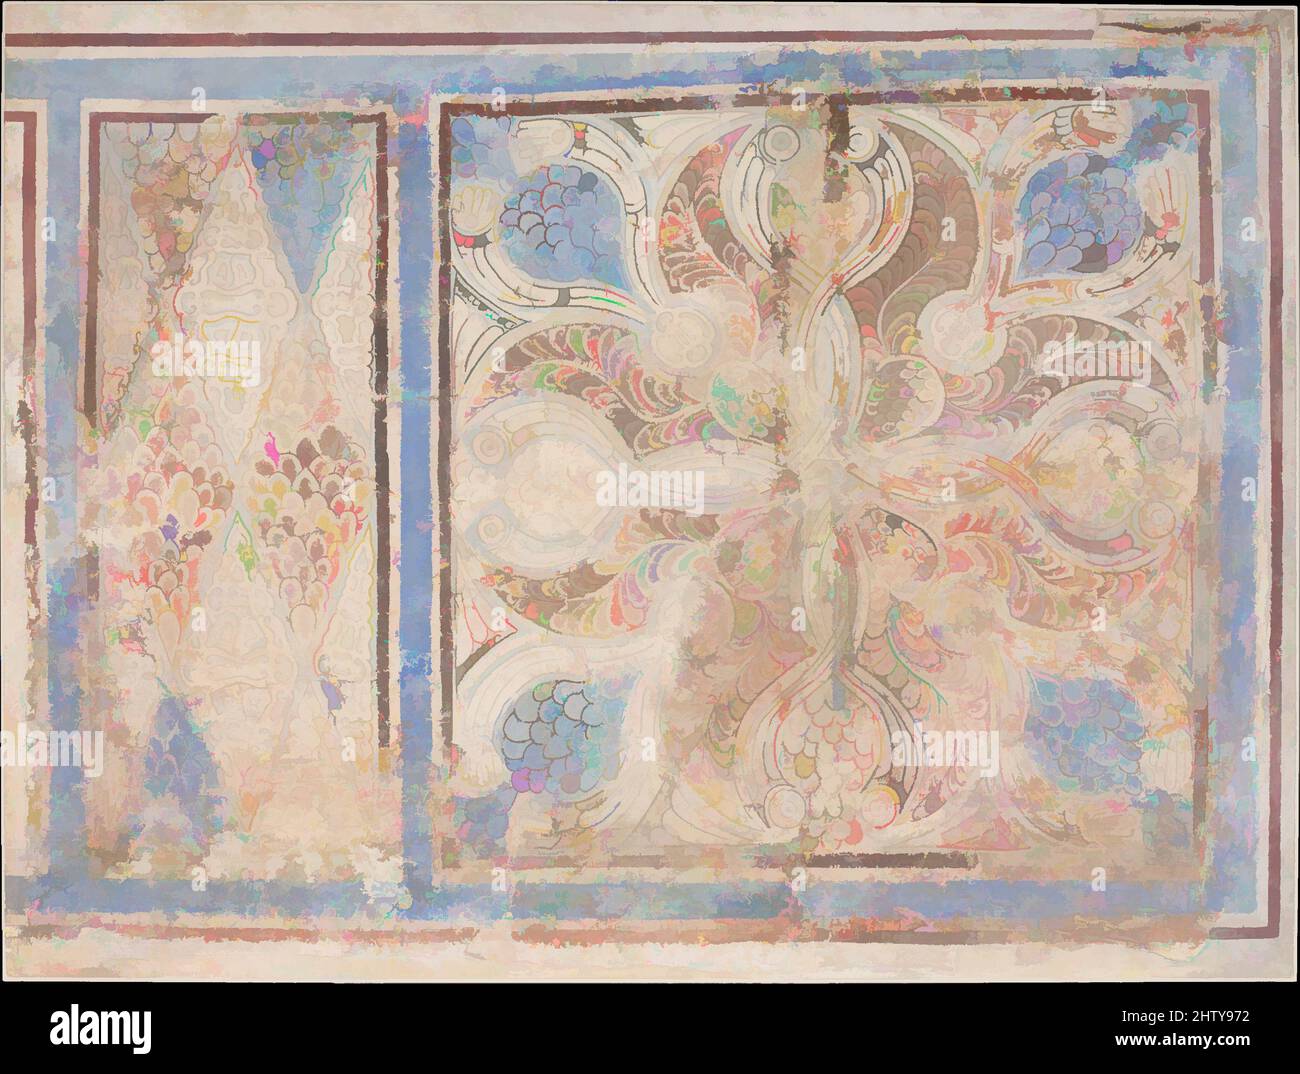 Arte ispirata a pannelli di dado dipinti, 9th secolo, scavati in Iran, Nishapur, Stucco; Verniciato, H. 40 3/8 poll. (102,6 cm), Stucco, questo pannello di dado è stato scavato da una stanza nella zona di Tepe Madrasa di Nishapur che un tempo aveva un vivace schema di decorazione dipinta. La parte superiore della, opere classiche modernizzate da Artotop con un tuffo di modernità. Forme, colore e valore, impatto visivo accattivante sulle emozioni artistiche attraverso la libertà delle opere d'arte in modo contemporaneo. Un messaggio senza tempo che persegue una nuova direzione selvaggiamente creativa. Artisti che si rivolgono al supporto digitale e creano l'NFT Artotop Foto Stock